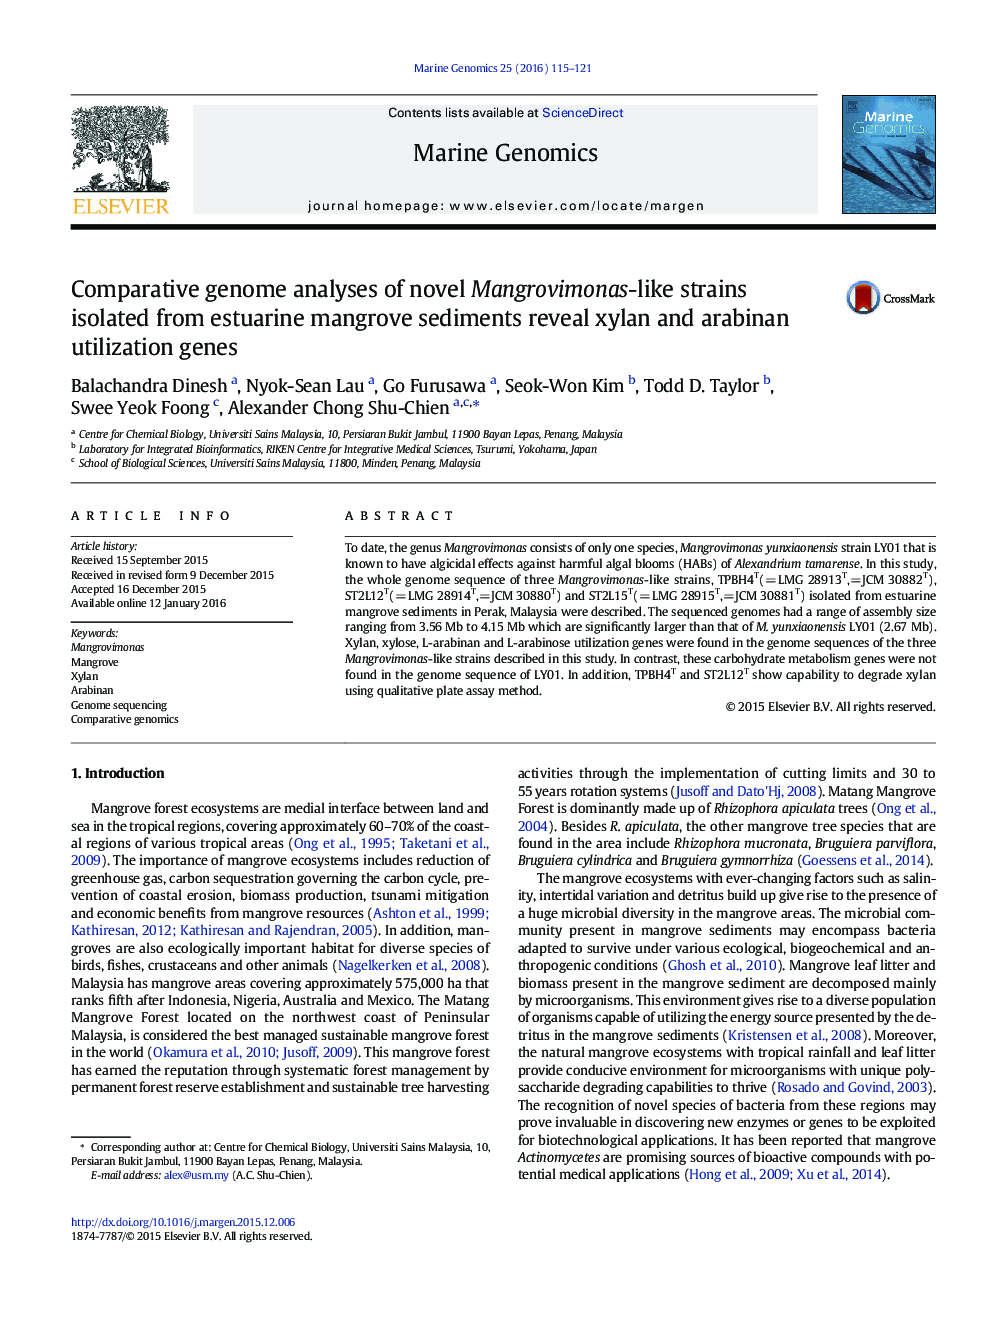 تجزیه و تحلیل ژنوم مقایسه ای از گونه های منگورویموناس جدید جدا شده از رسوبات مانگو های استوآرین نشان می دهد ژن های استفاده از زایلان و عربین 